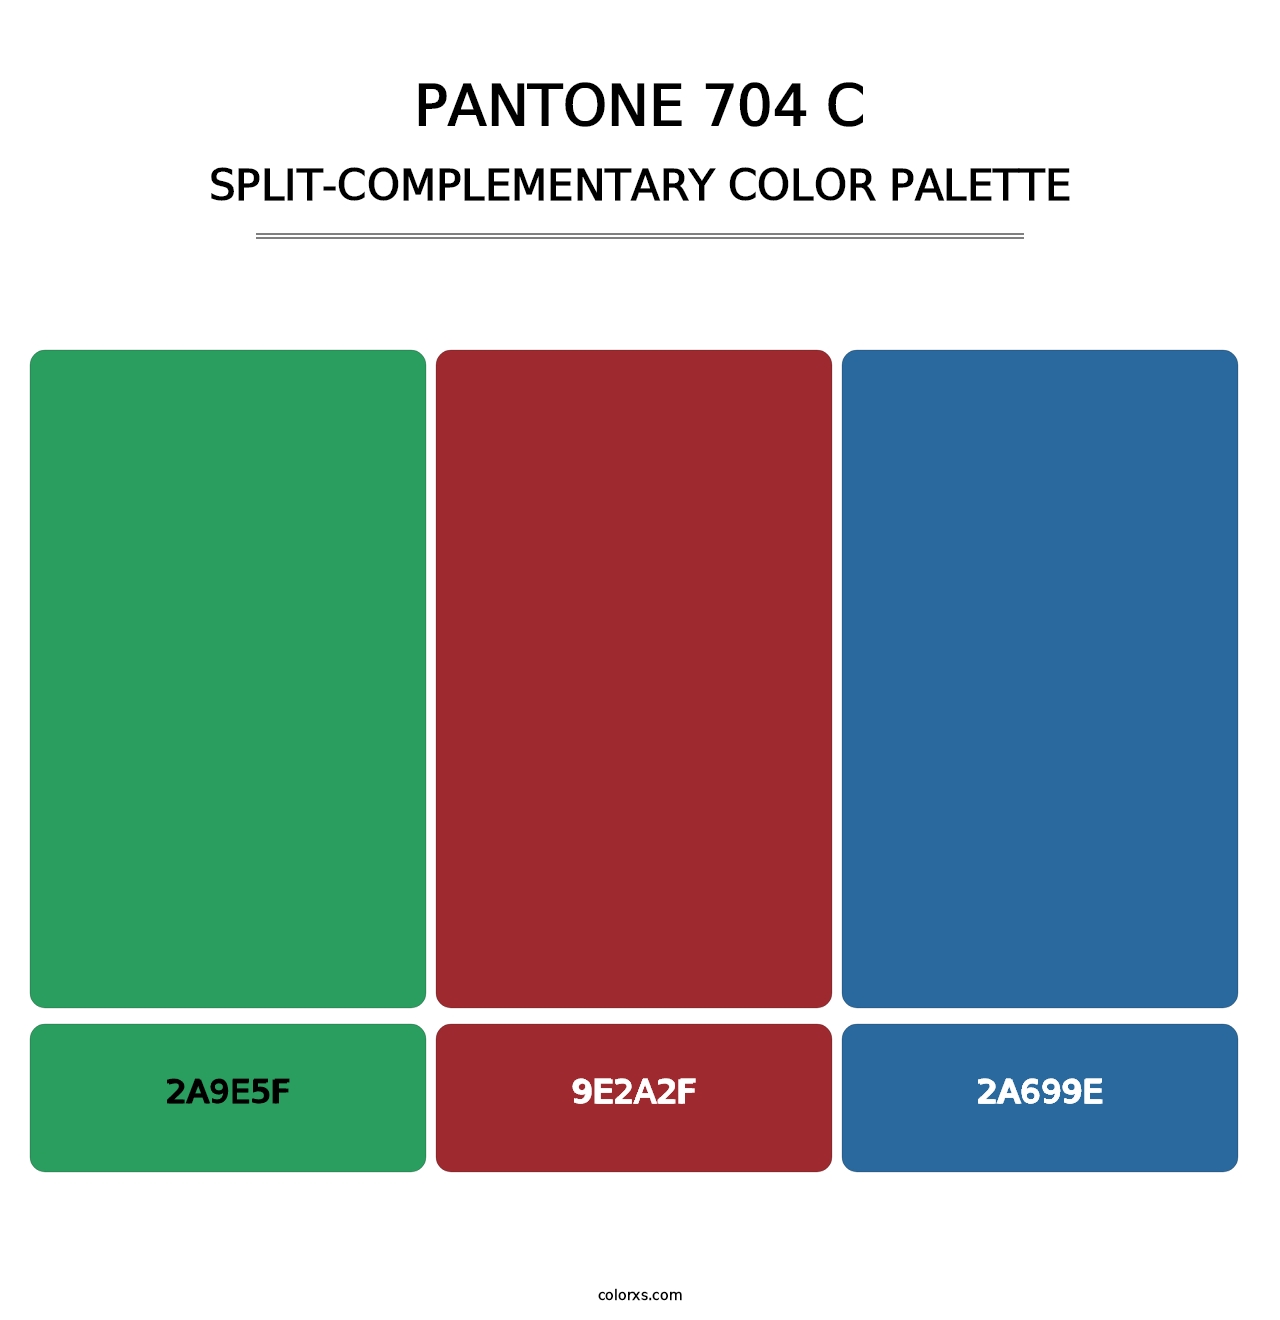 PANTONE 704 C - Split-Complementary Color Palette